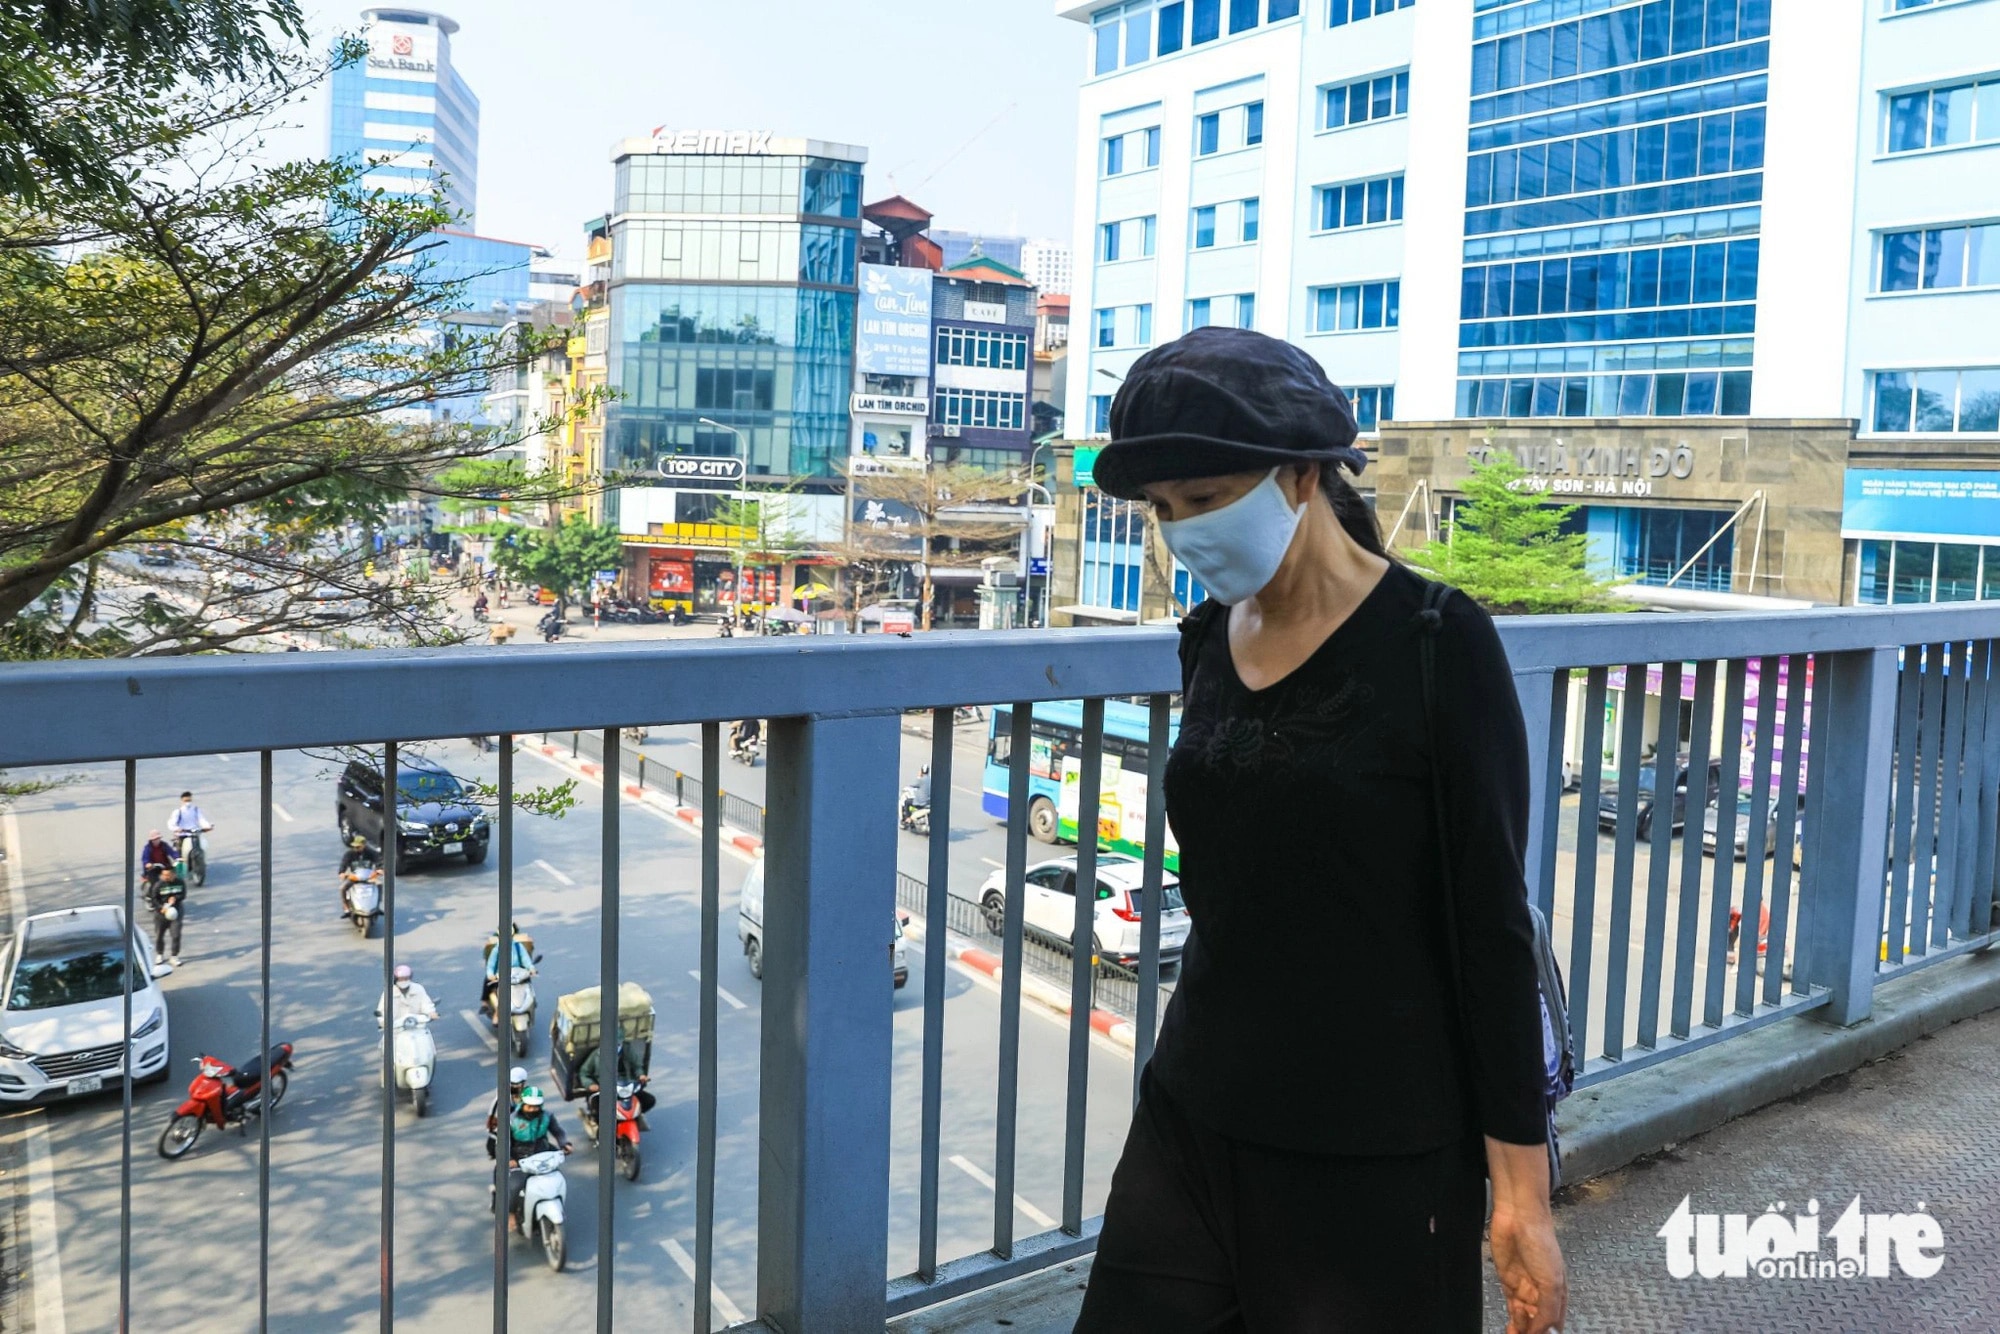 Dù đi bộ nhưng người dân Hà Nội vẫn đeo khẩu trang để tránh bụi - Ảnh: DANH KHANG